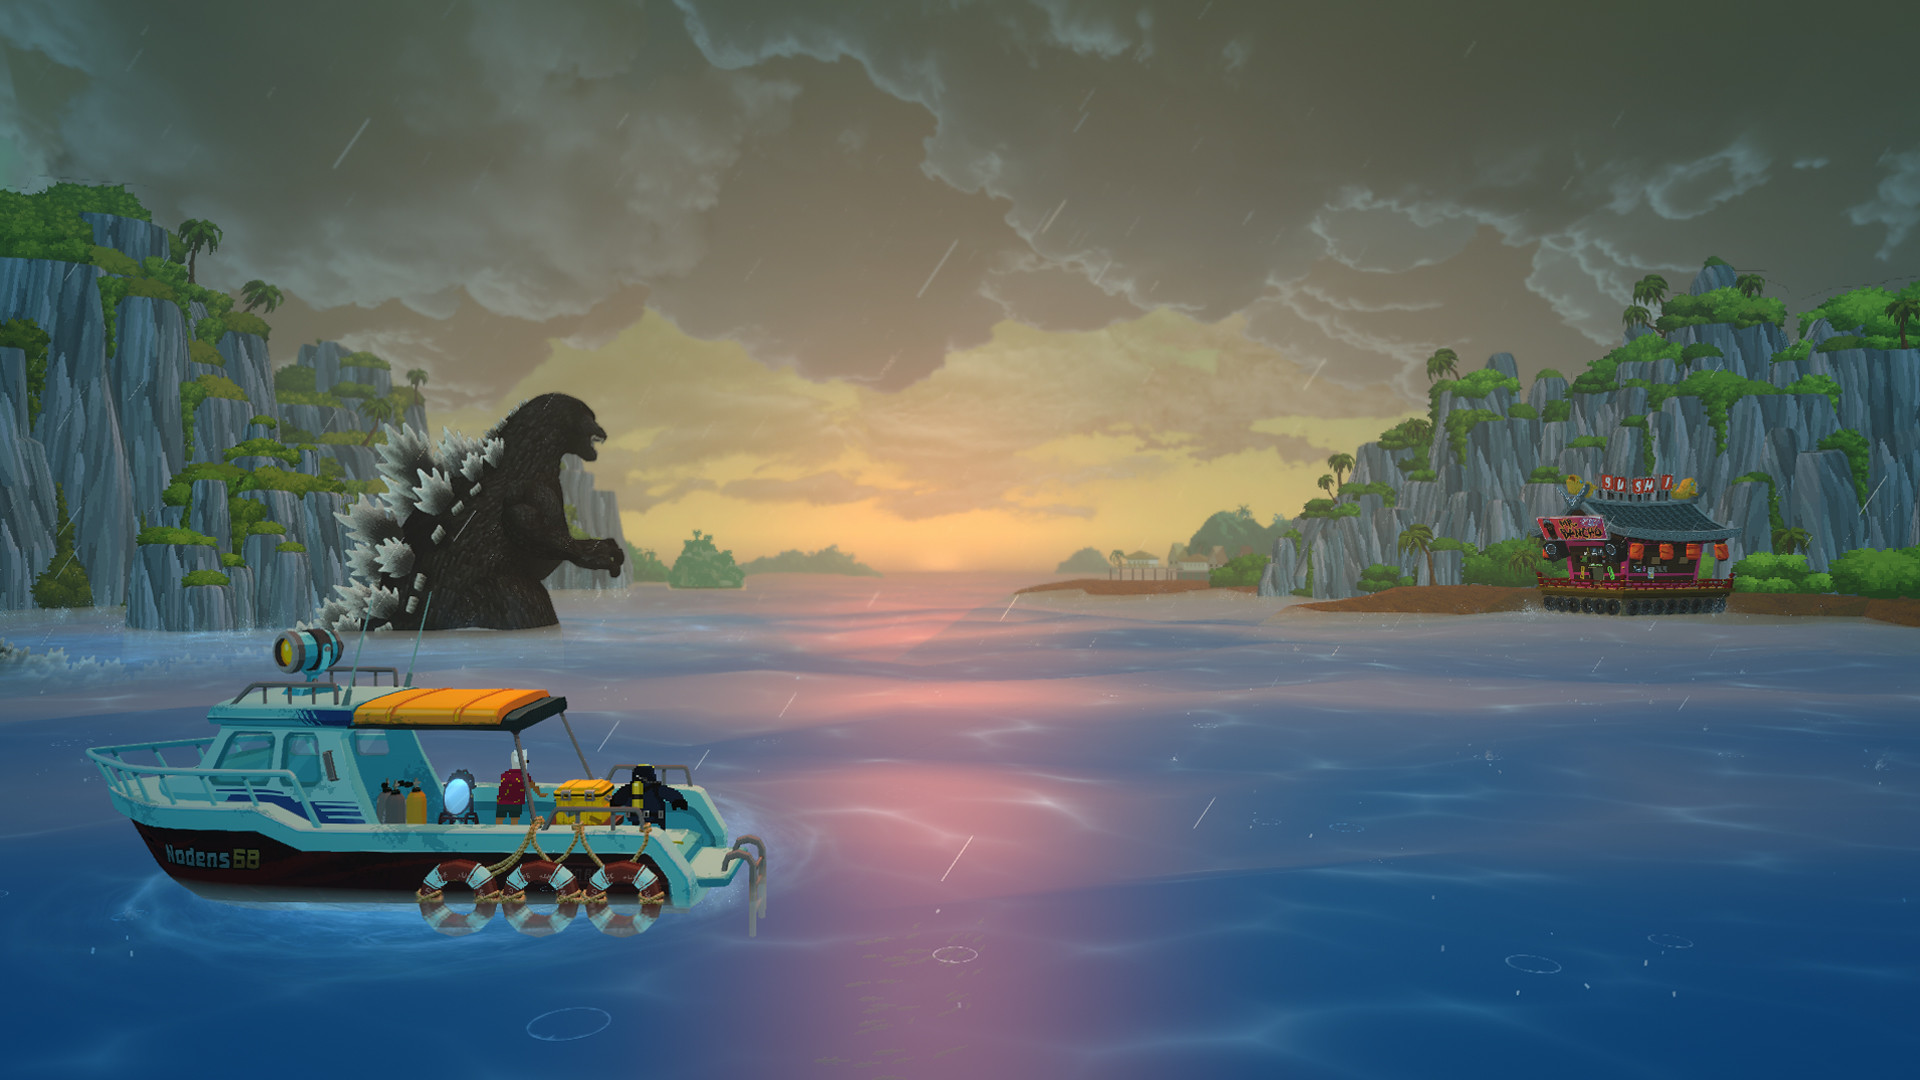 En arrière-plan, Godzilla se déplace à travers une baie vers un bar à sushi accroché sur la côte au loin. En avant-plan, Dave et Cobra se trouvent dans leur bateau de pêche, observant la scène qui se déroule devant eux.